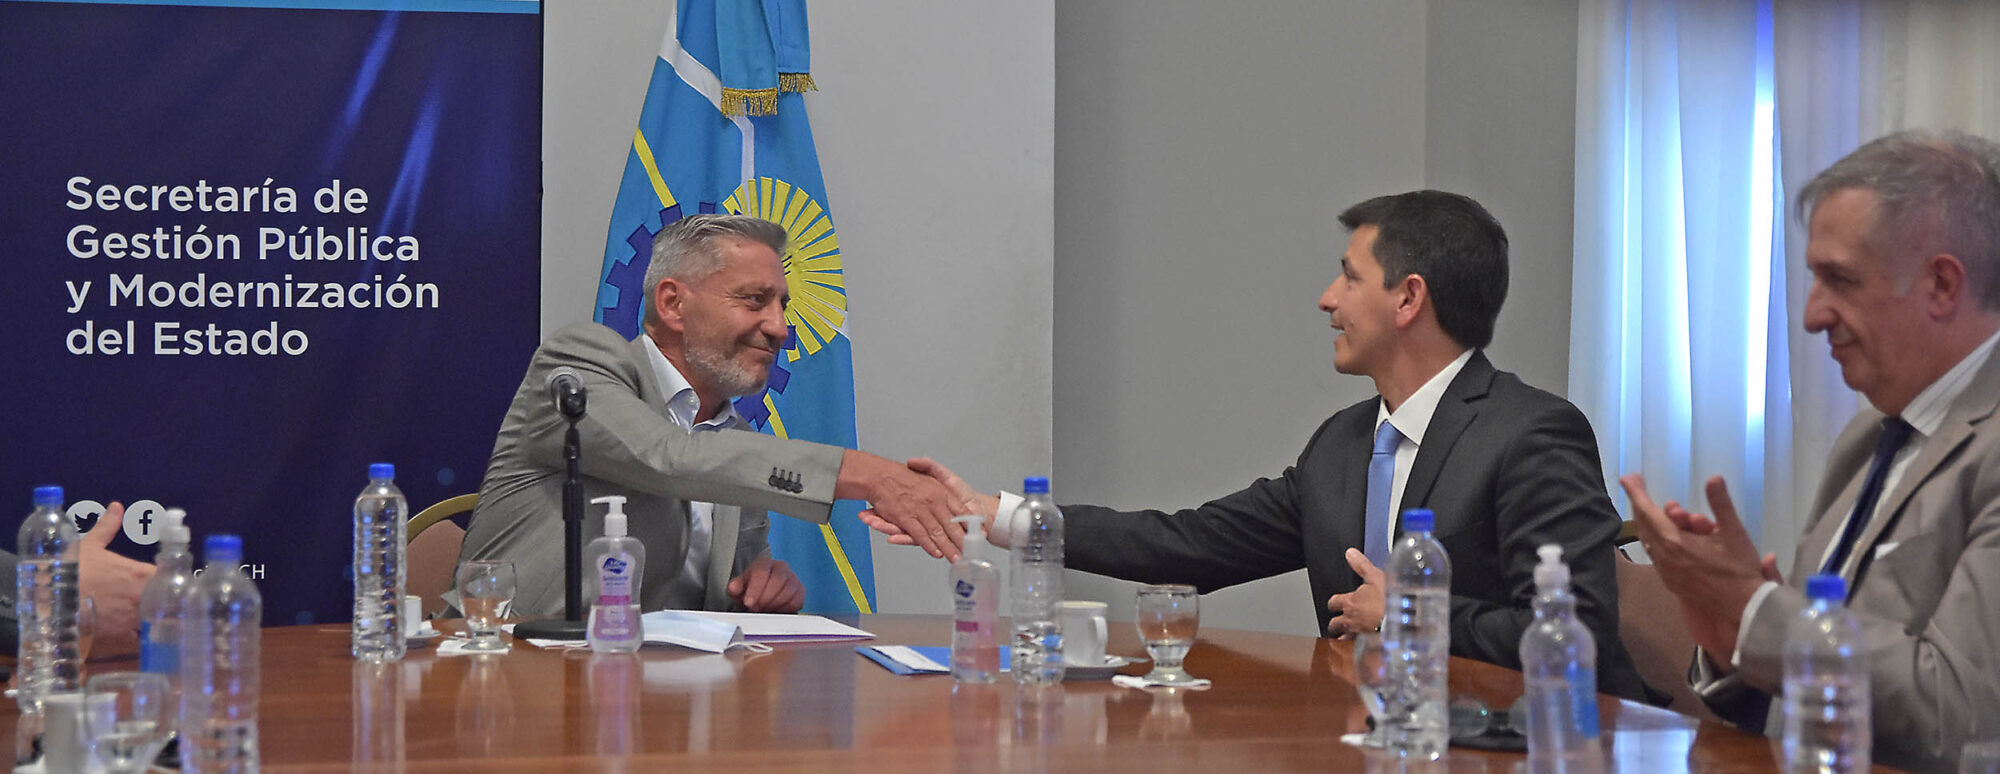 El gobernador y Telecom anunciaron ampliación de la conectividad móvil en la Ruta Nacional 3 entre Puerto Madryn y Comodoro Rivadavia